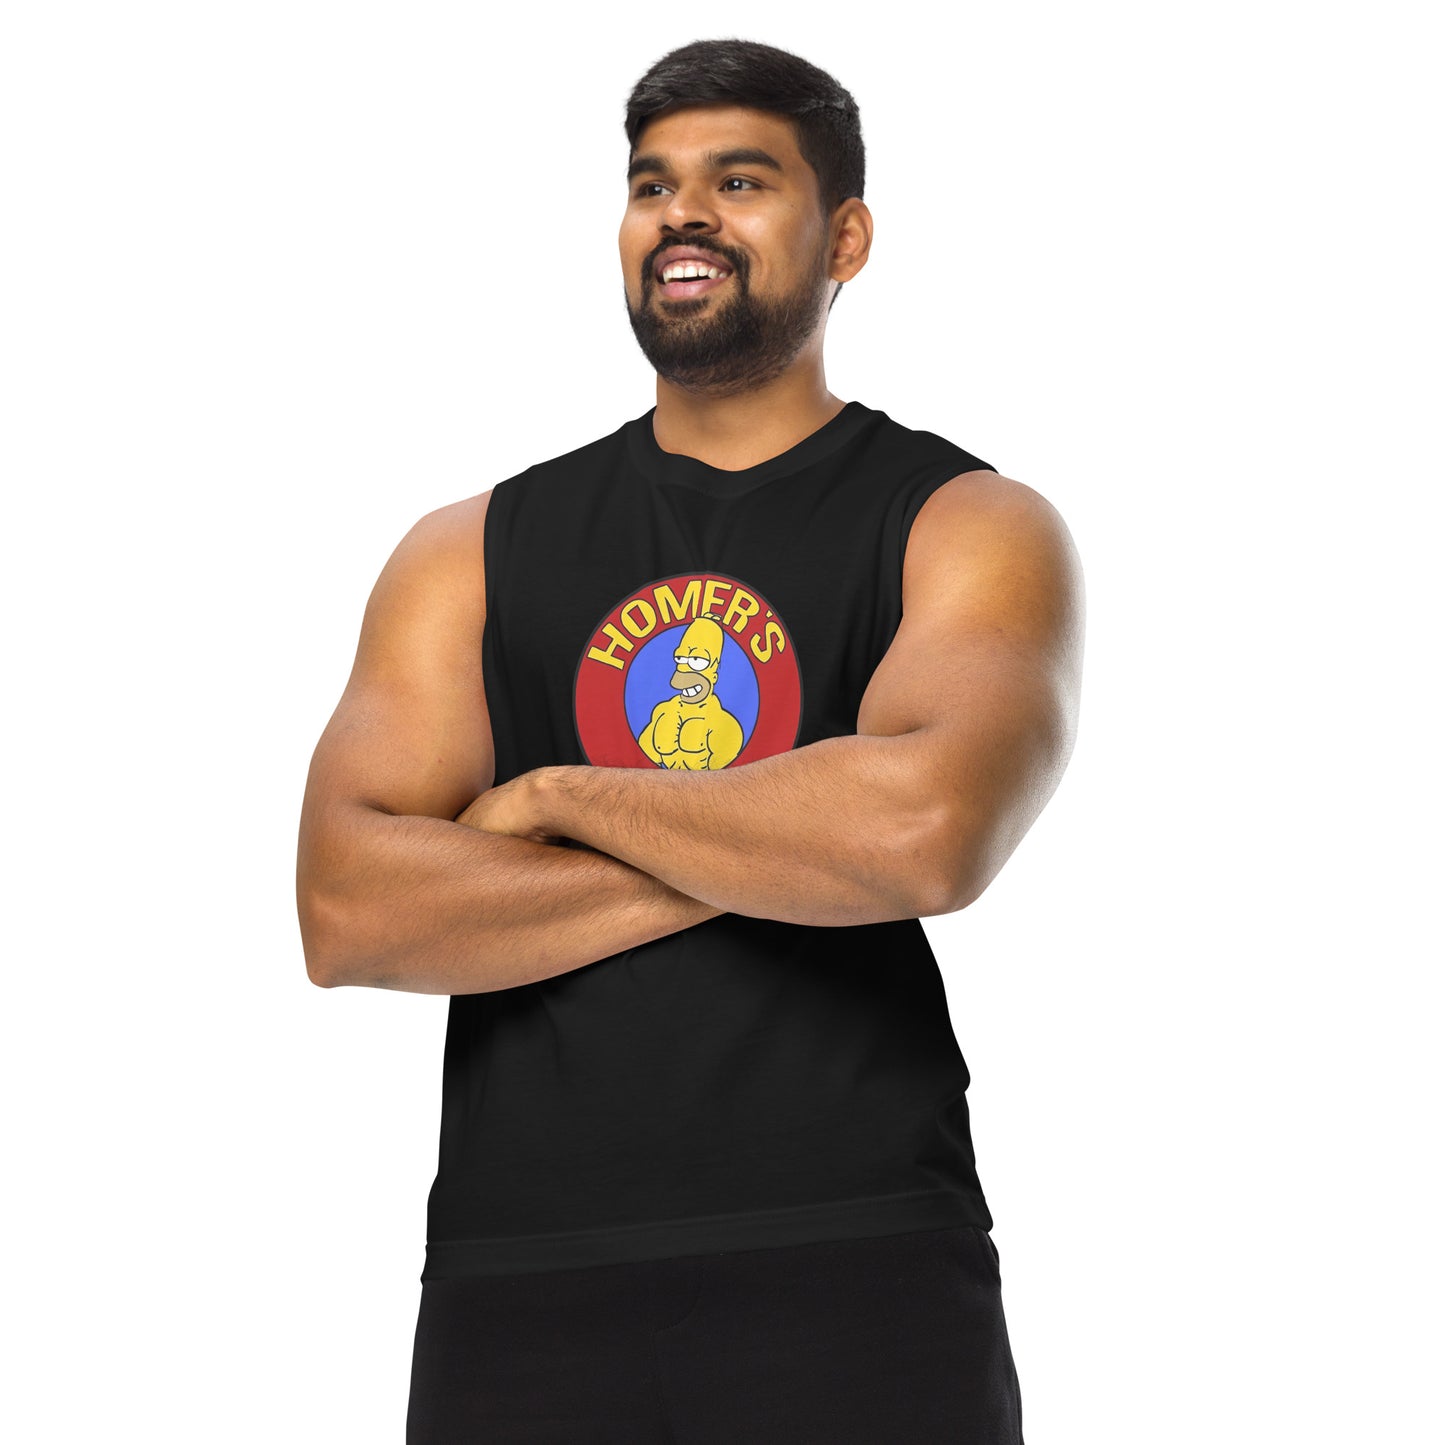 Camiseta sin mangas perfecta para entrenar,Camiseta Homer's Gym comprala en línea y experimenta el mejor servicio al cliente. 